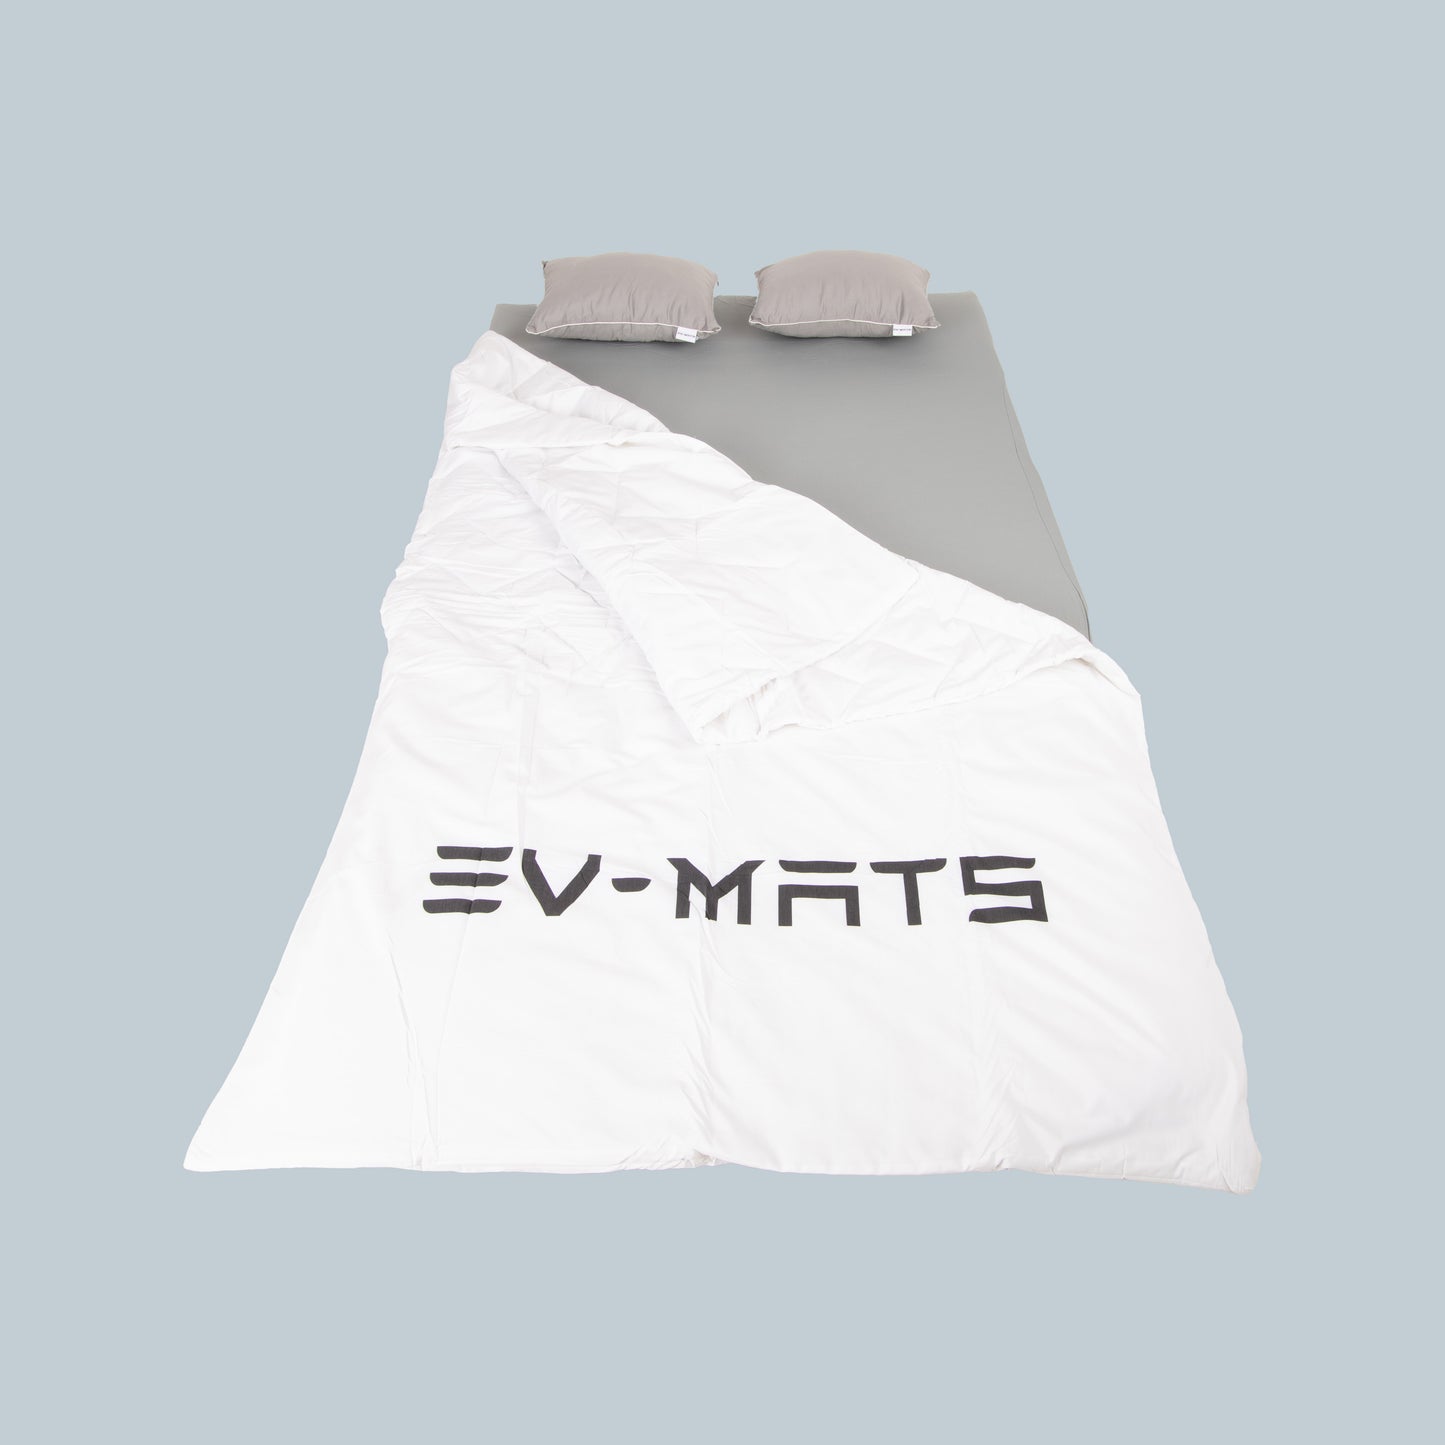 EV-MATS Basic CAMP SET, Tesla Model Y için Tesla yatağı, Tesla Model Y'ün arka bagajına uygun su geçirmez çanta, bir çarşaf, bir yorgan, 2 yastık ve bir yastık kılıfını içerir